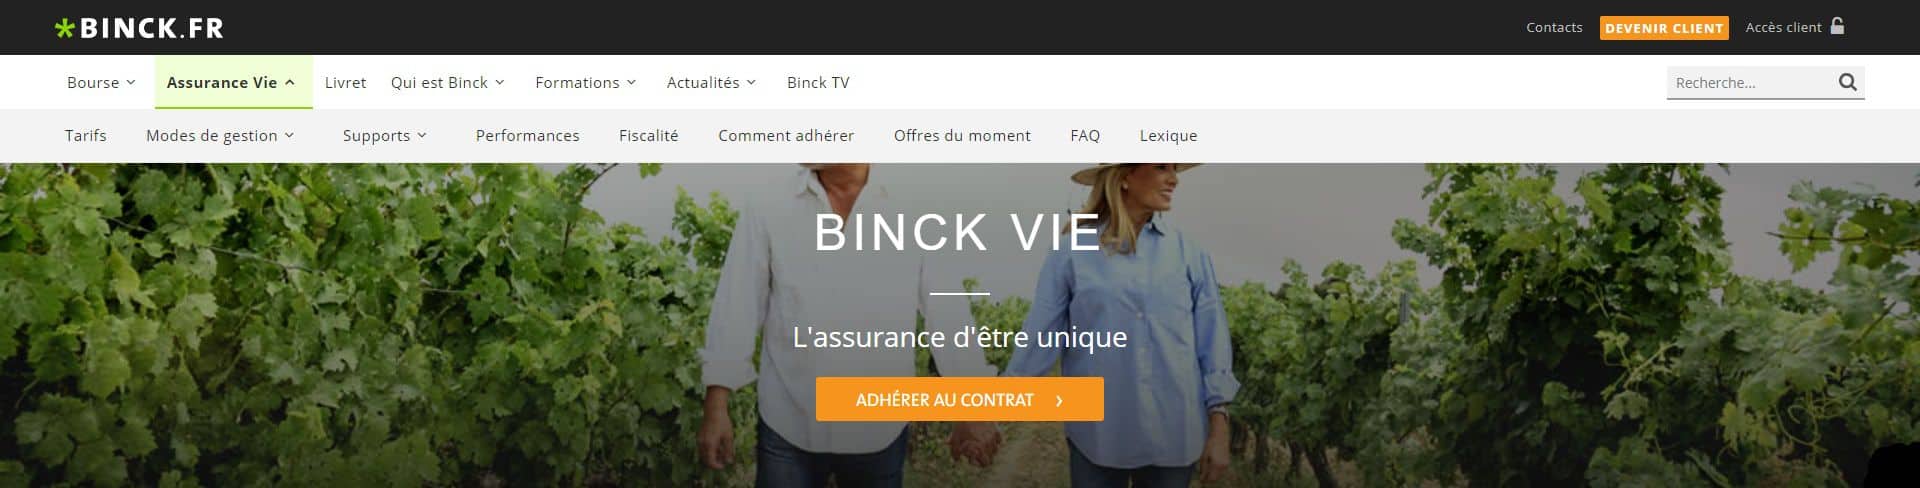 Binck-Meilleure-courtier-en-assurance-vie-et-en-bourse-en-ligne-assurance-vie-sur-internet